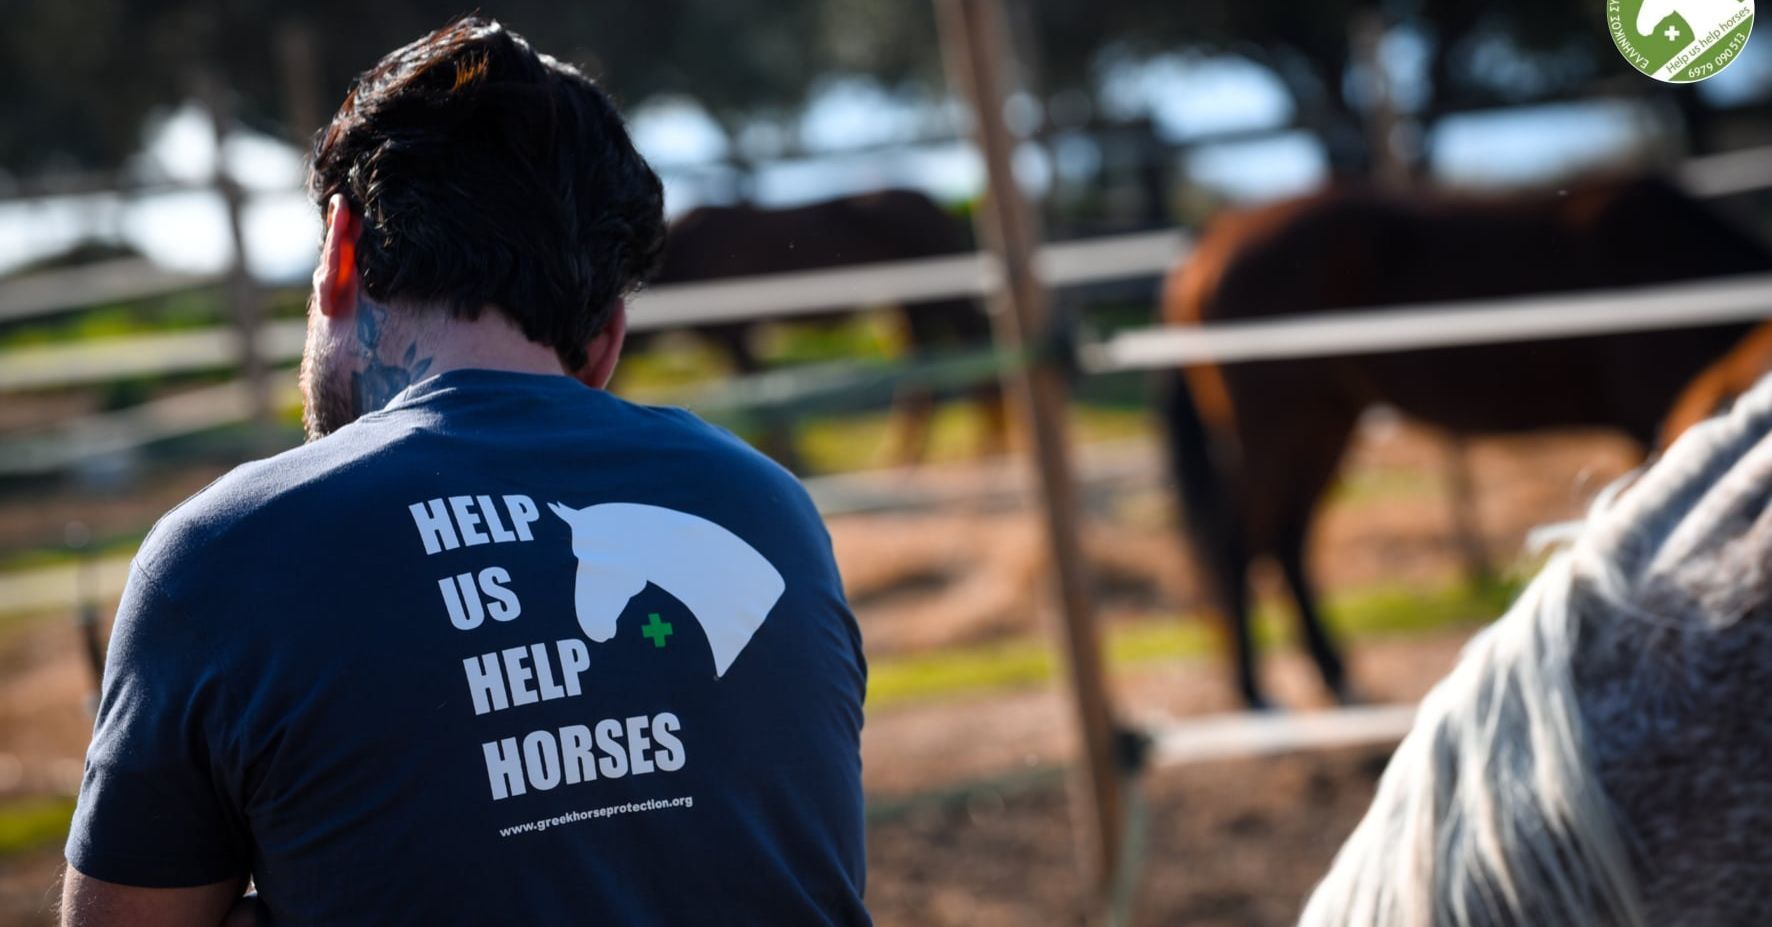 Ενημερώστε τον Ελληνικό Σύλλογο Προστασίας Ιπποειδών για άλογα, μουλάρια, γαϊδούρια σε πυρόπληκτες περιοχές της Αττικής